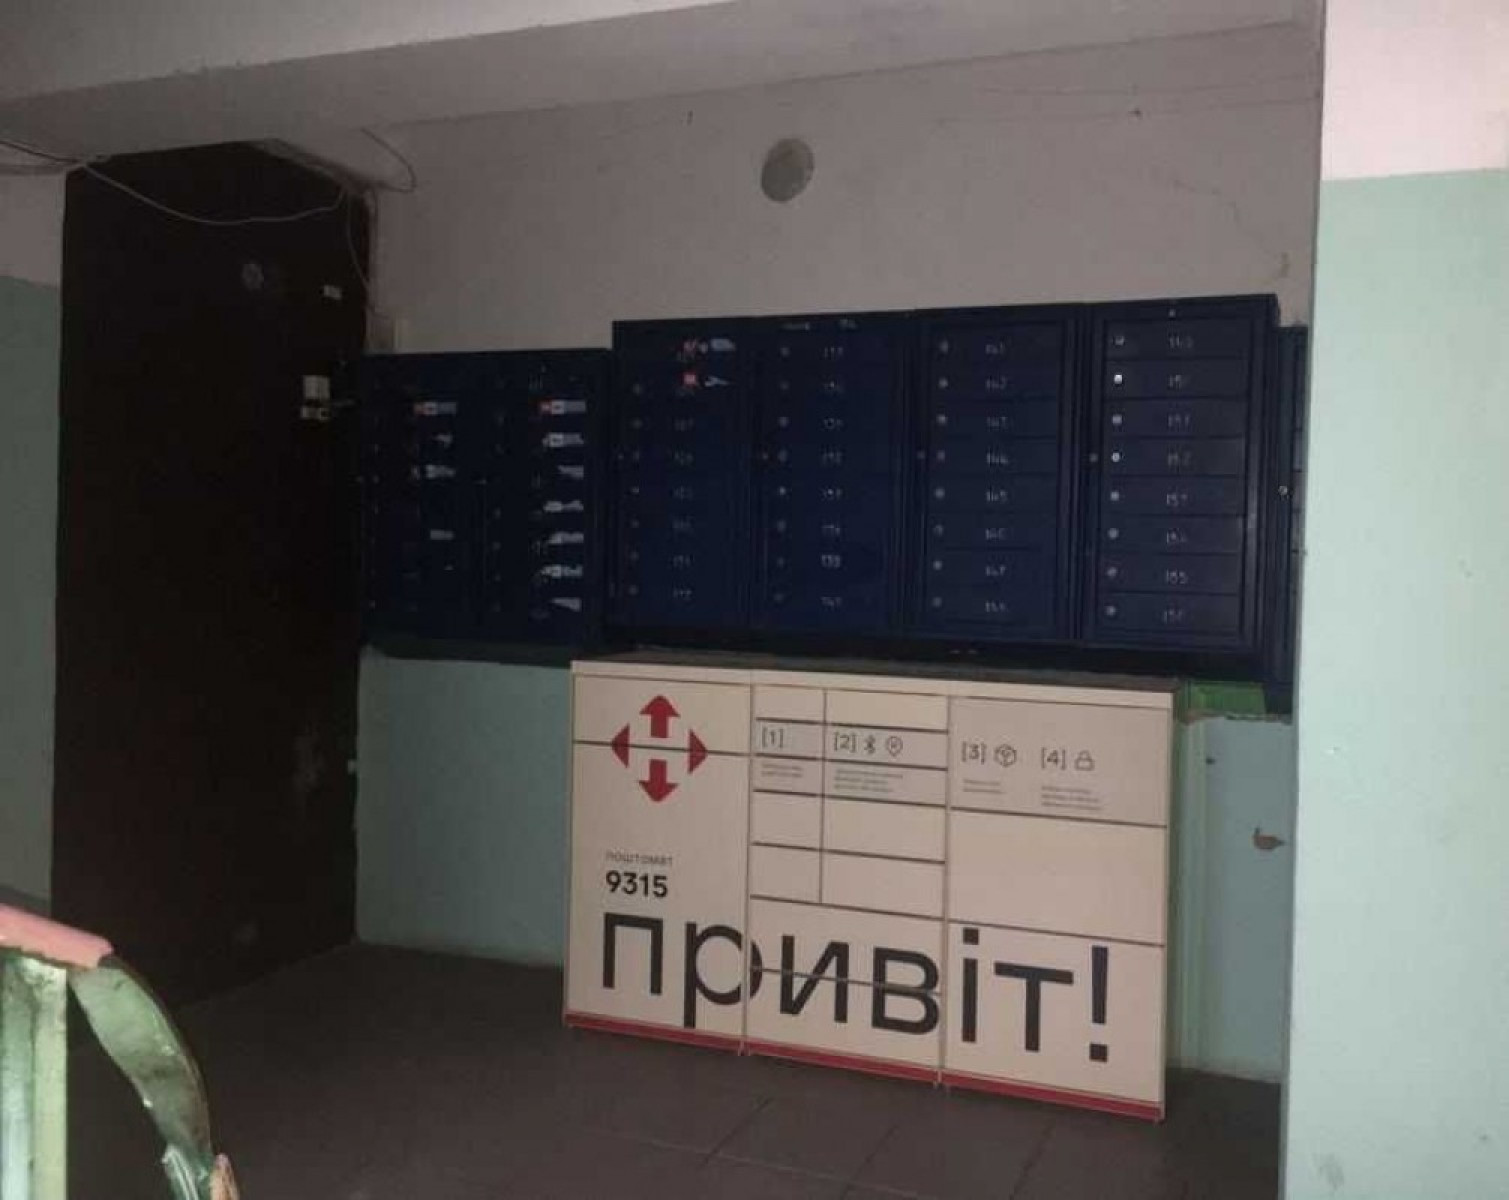 2-х комнатная квартира с новым ремонтом, в Шевченковском районе, SB